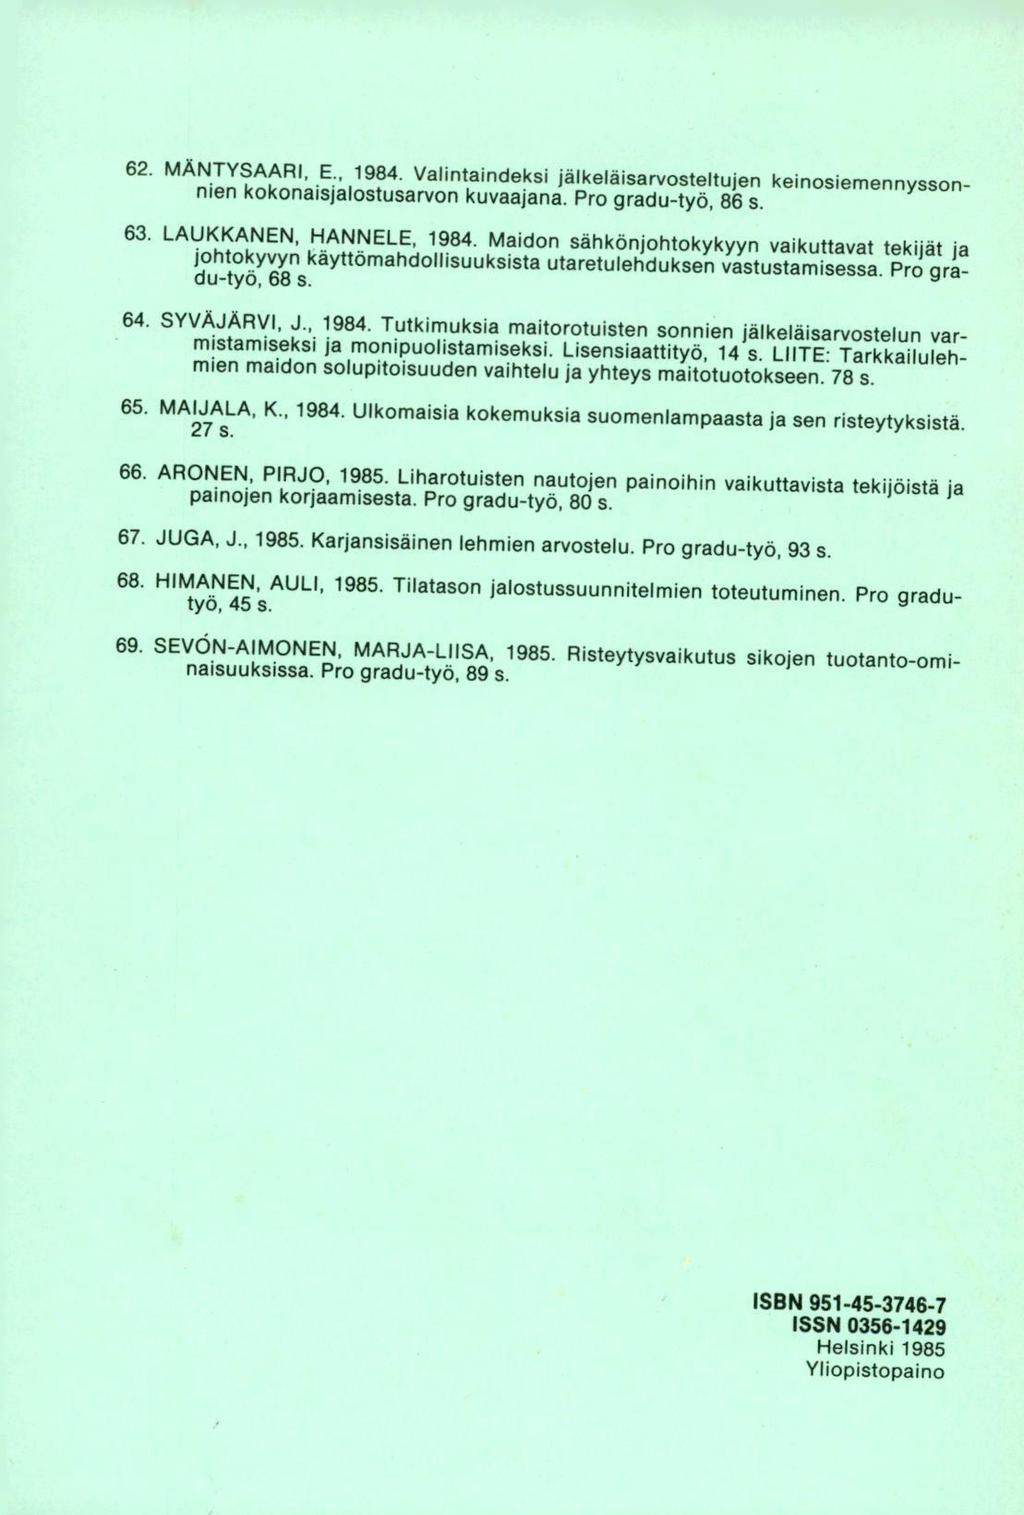 MÄNTYSAARI, E., 1984. Valintaindeksi jälkeläisarvosteltujen keinosiemennyssonnien kokonaisjalostusarvon kuvaajana. Pro gradu-työ, 86 s. LAUKKANEN, HANNELE, 1984.